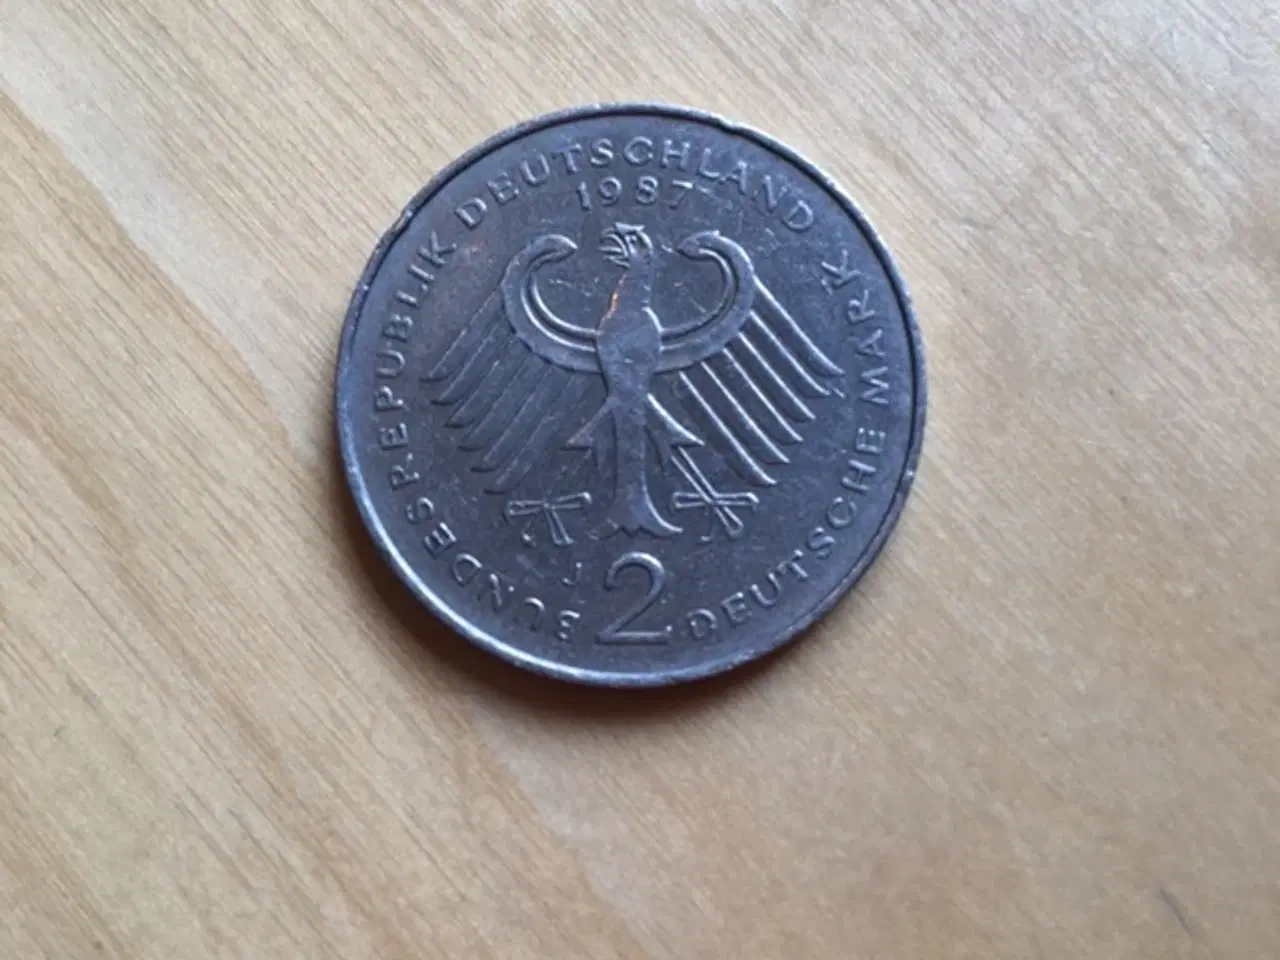 Billede 2 - 2 Deutsche mark fra 1987 